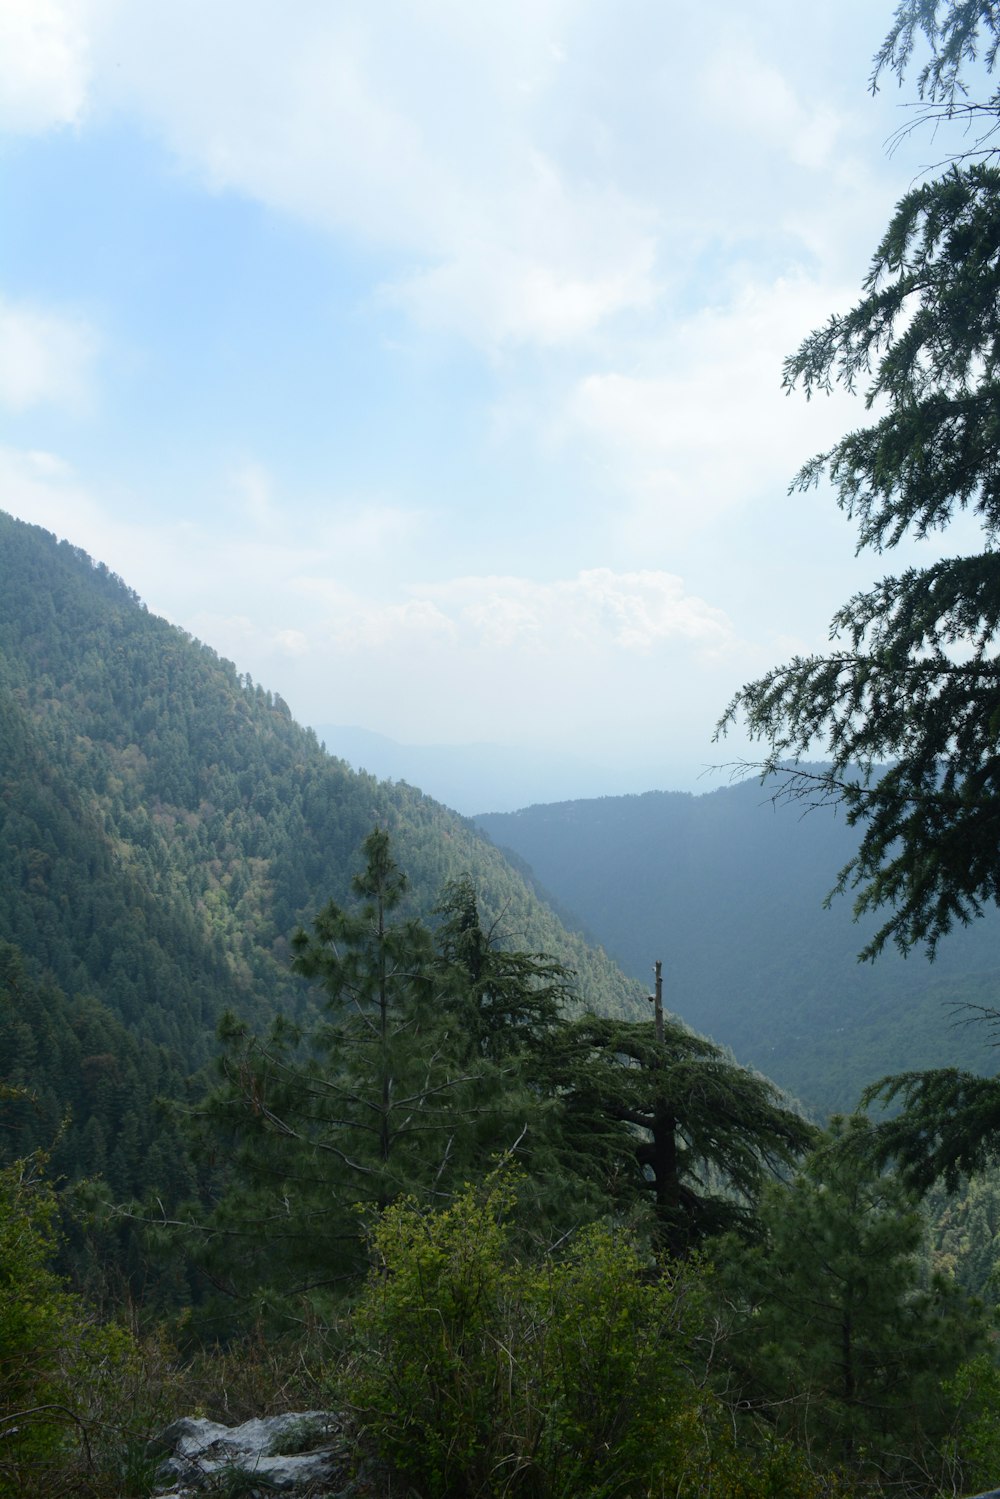 Una vista panorámica de una montaña con árboles y montañas al fondo